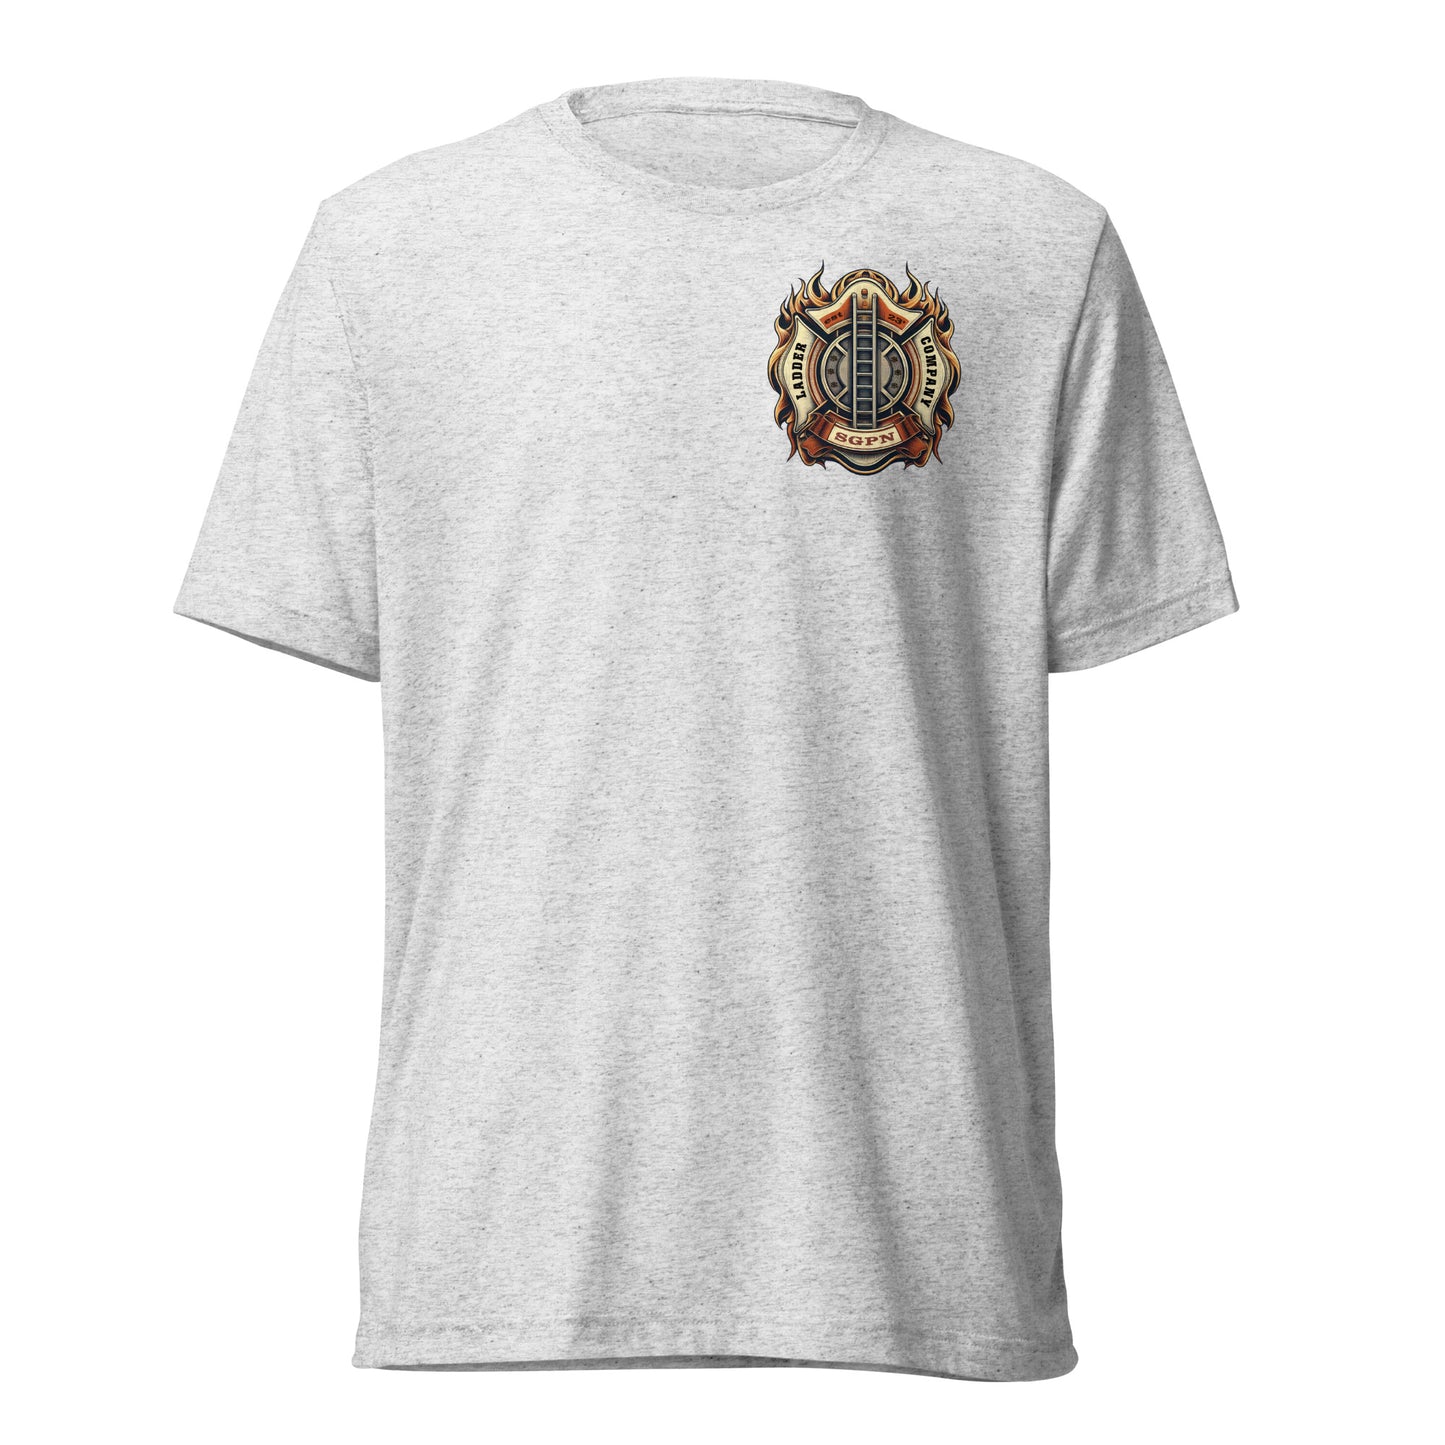 SGPN Ladder Company - est 23' - Short sleeve t-shirt  (Front/Back Print)